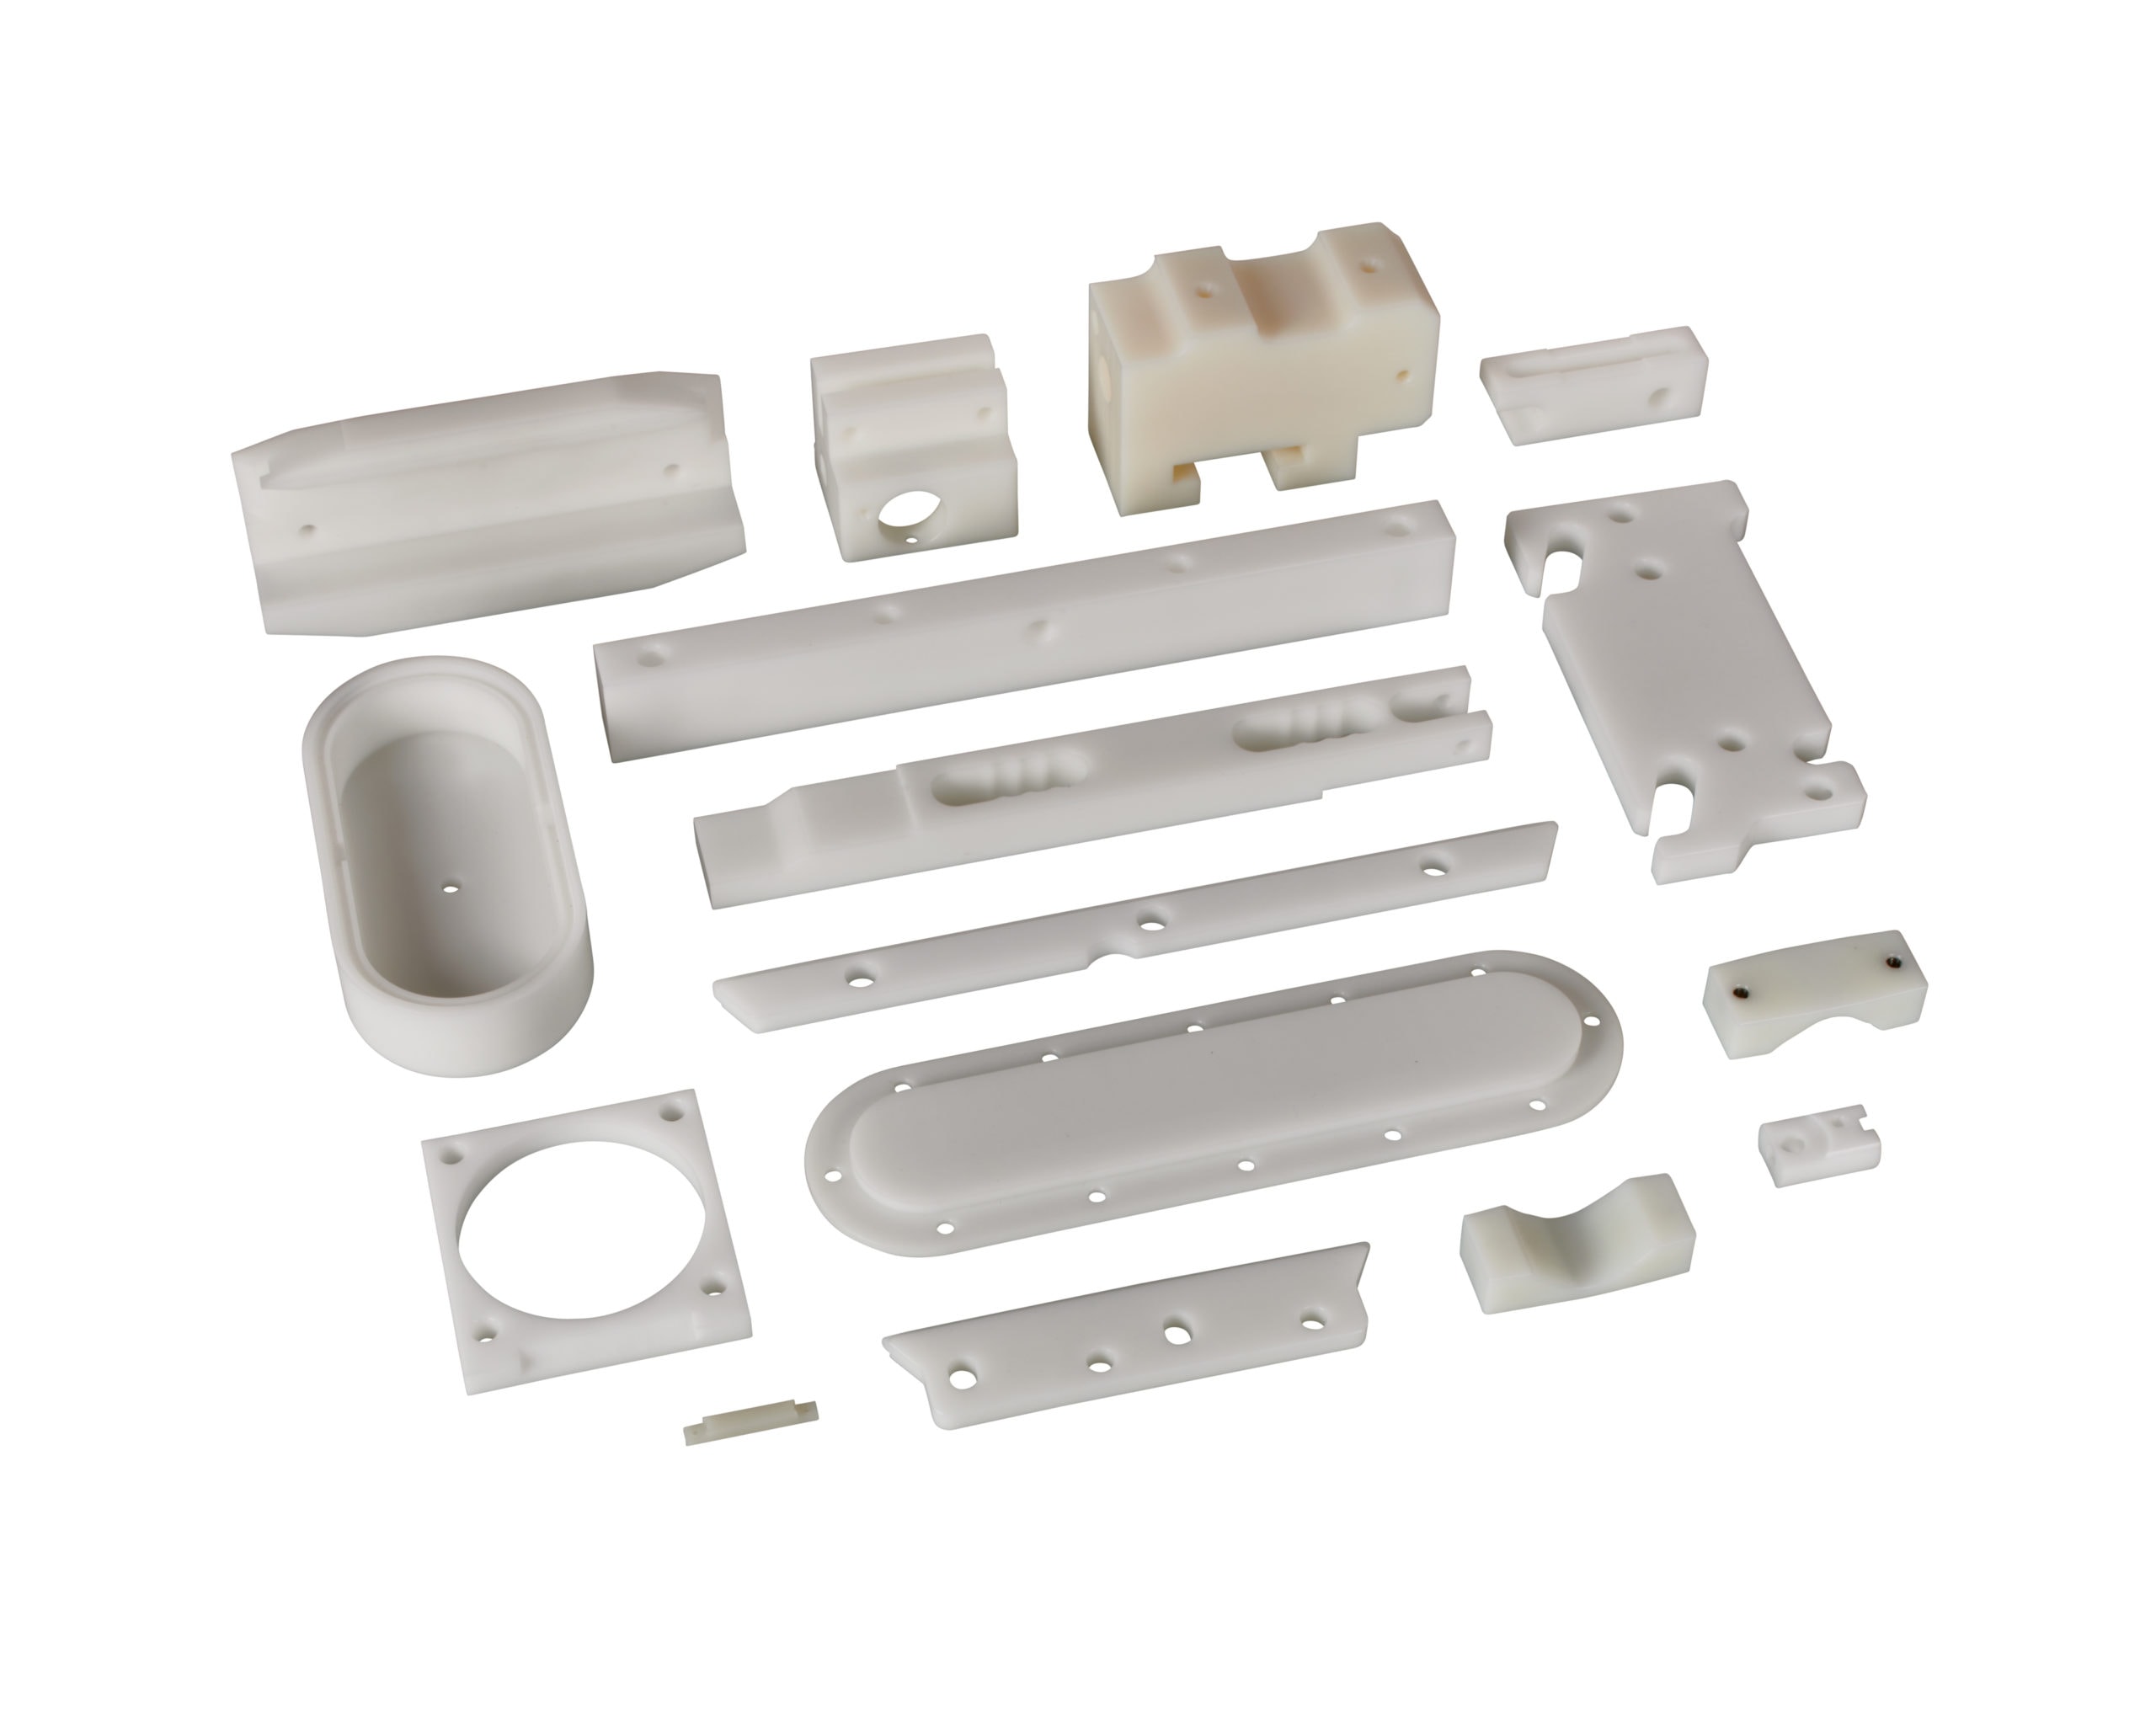 Plastic Parts - CNC Milling Services